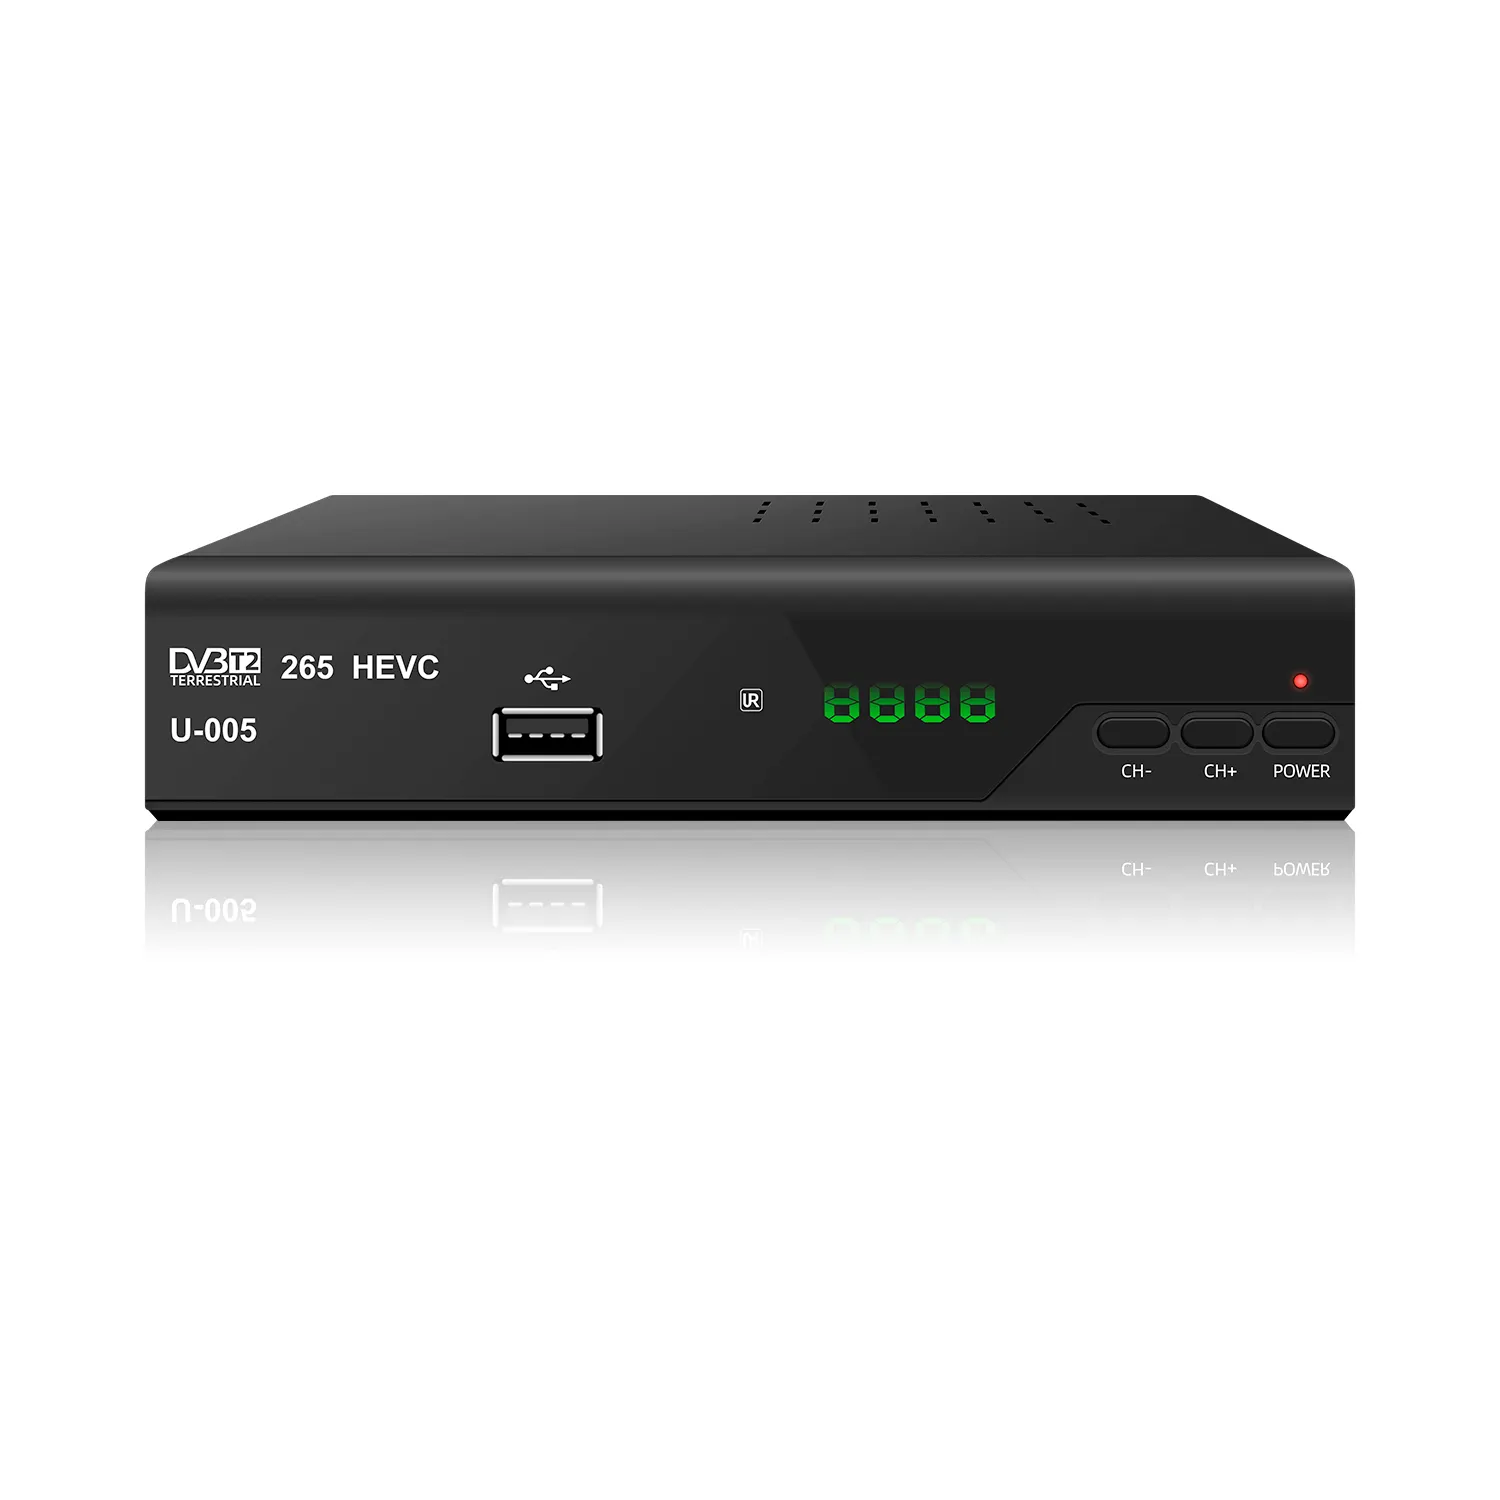 Fta hd 1080p DVB-T2 set-top-box frei zu luft mini tv kanal decoder zeit verschiebung media player dvb-t2